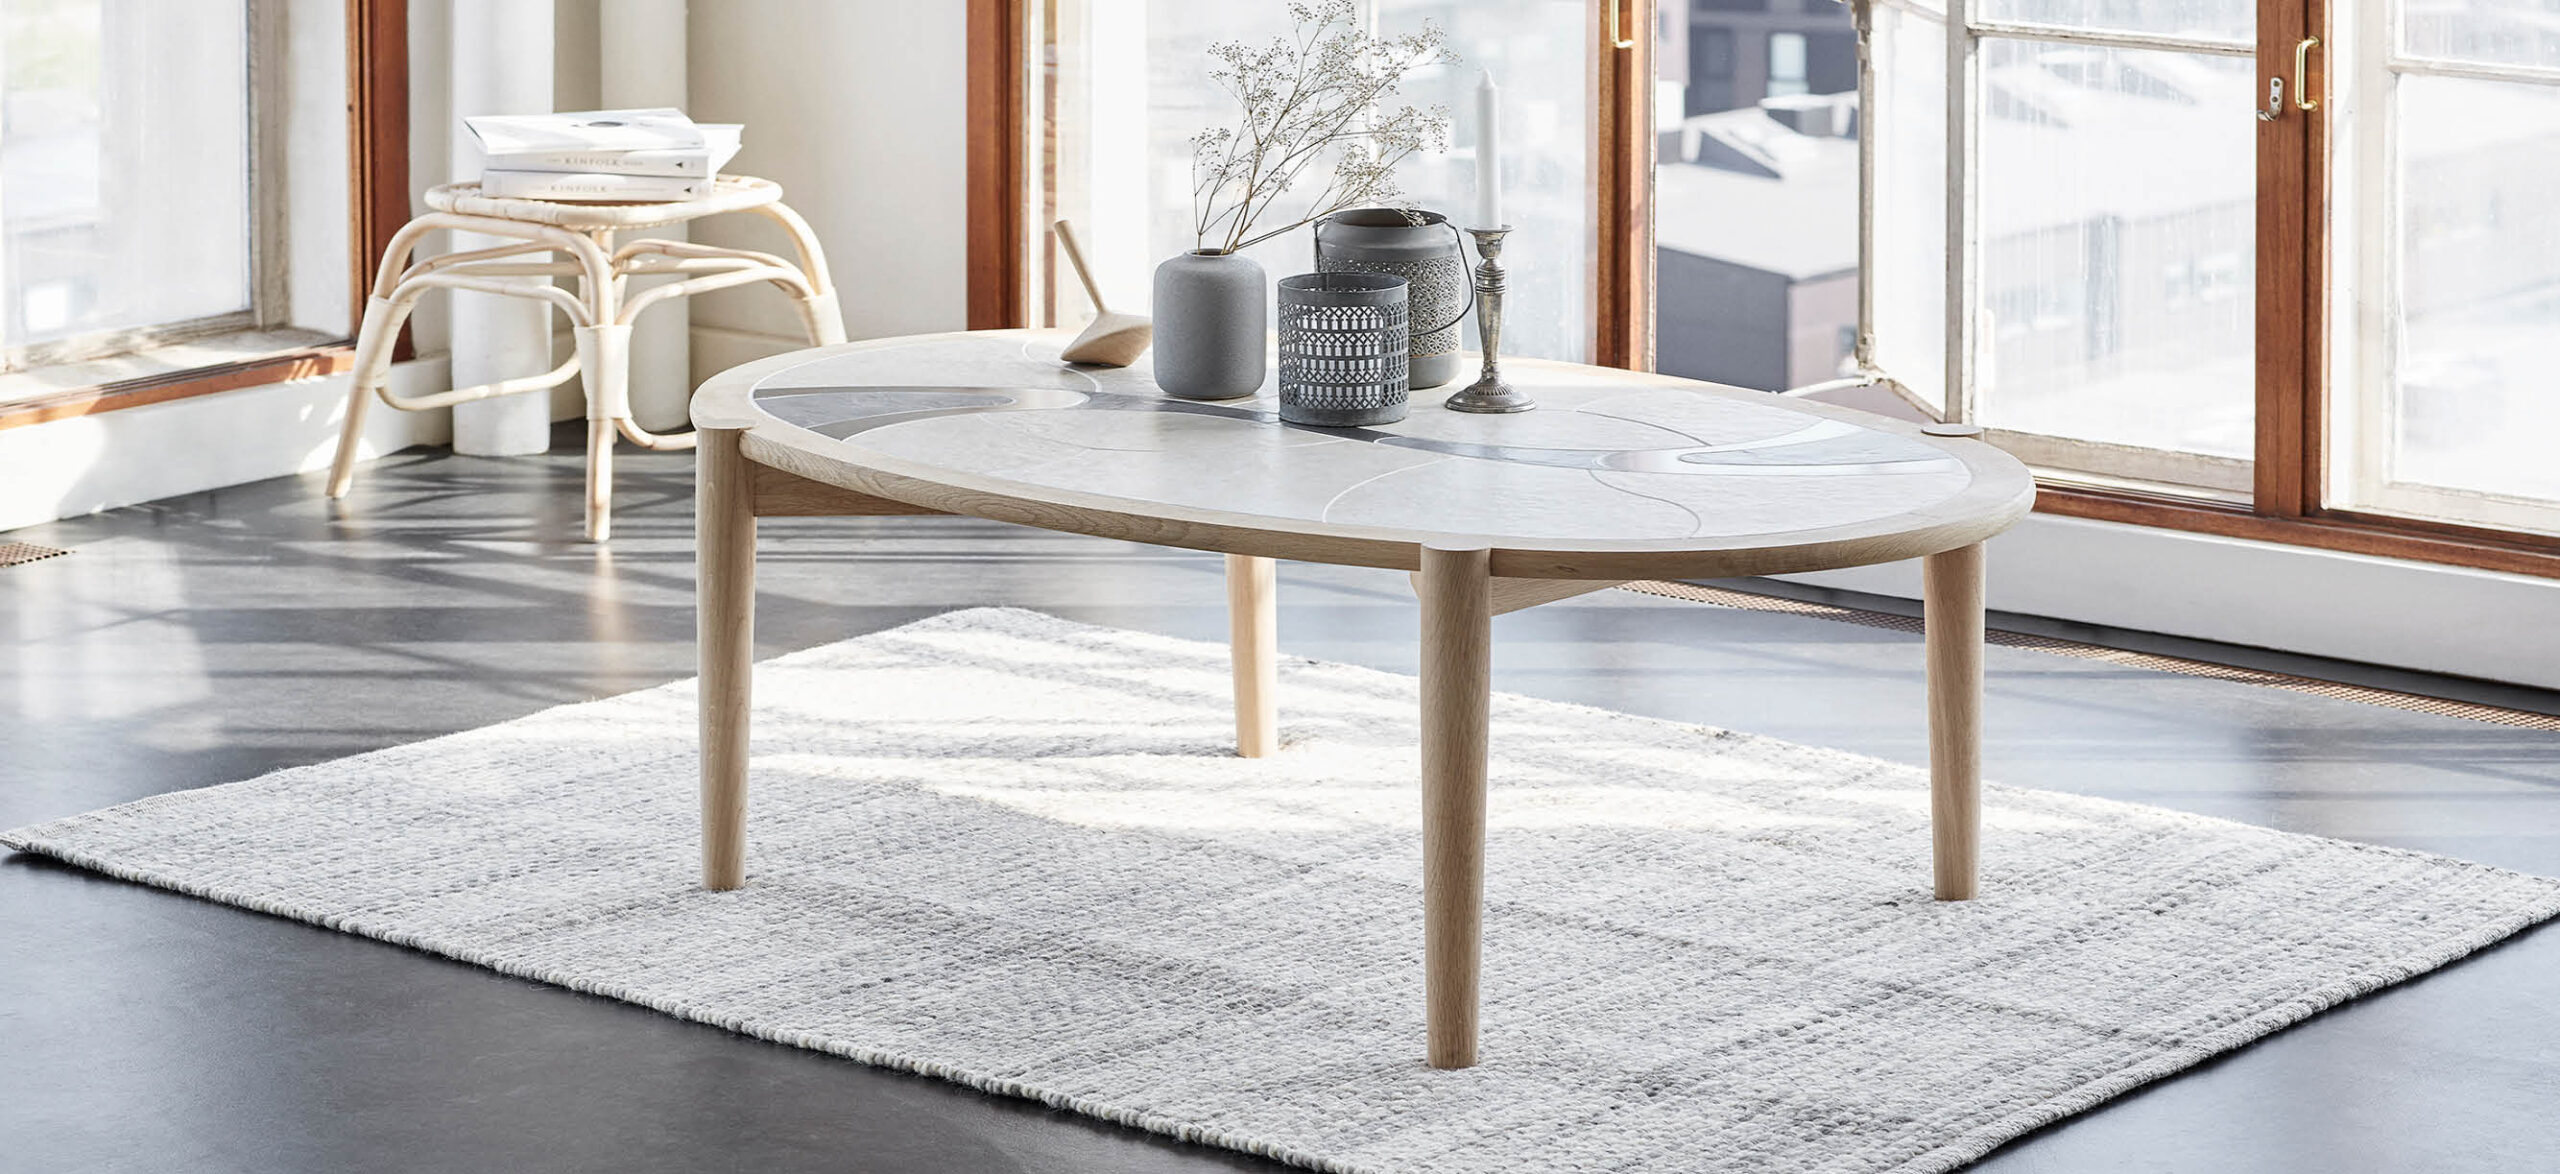 Sofaborde | Haslev Møbelsnedkeri | Design dit eget sofabord i massiv